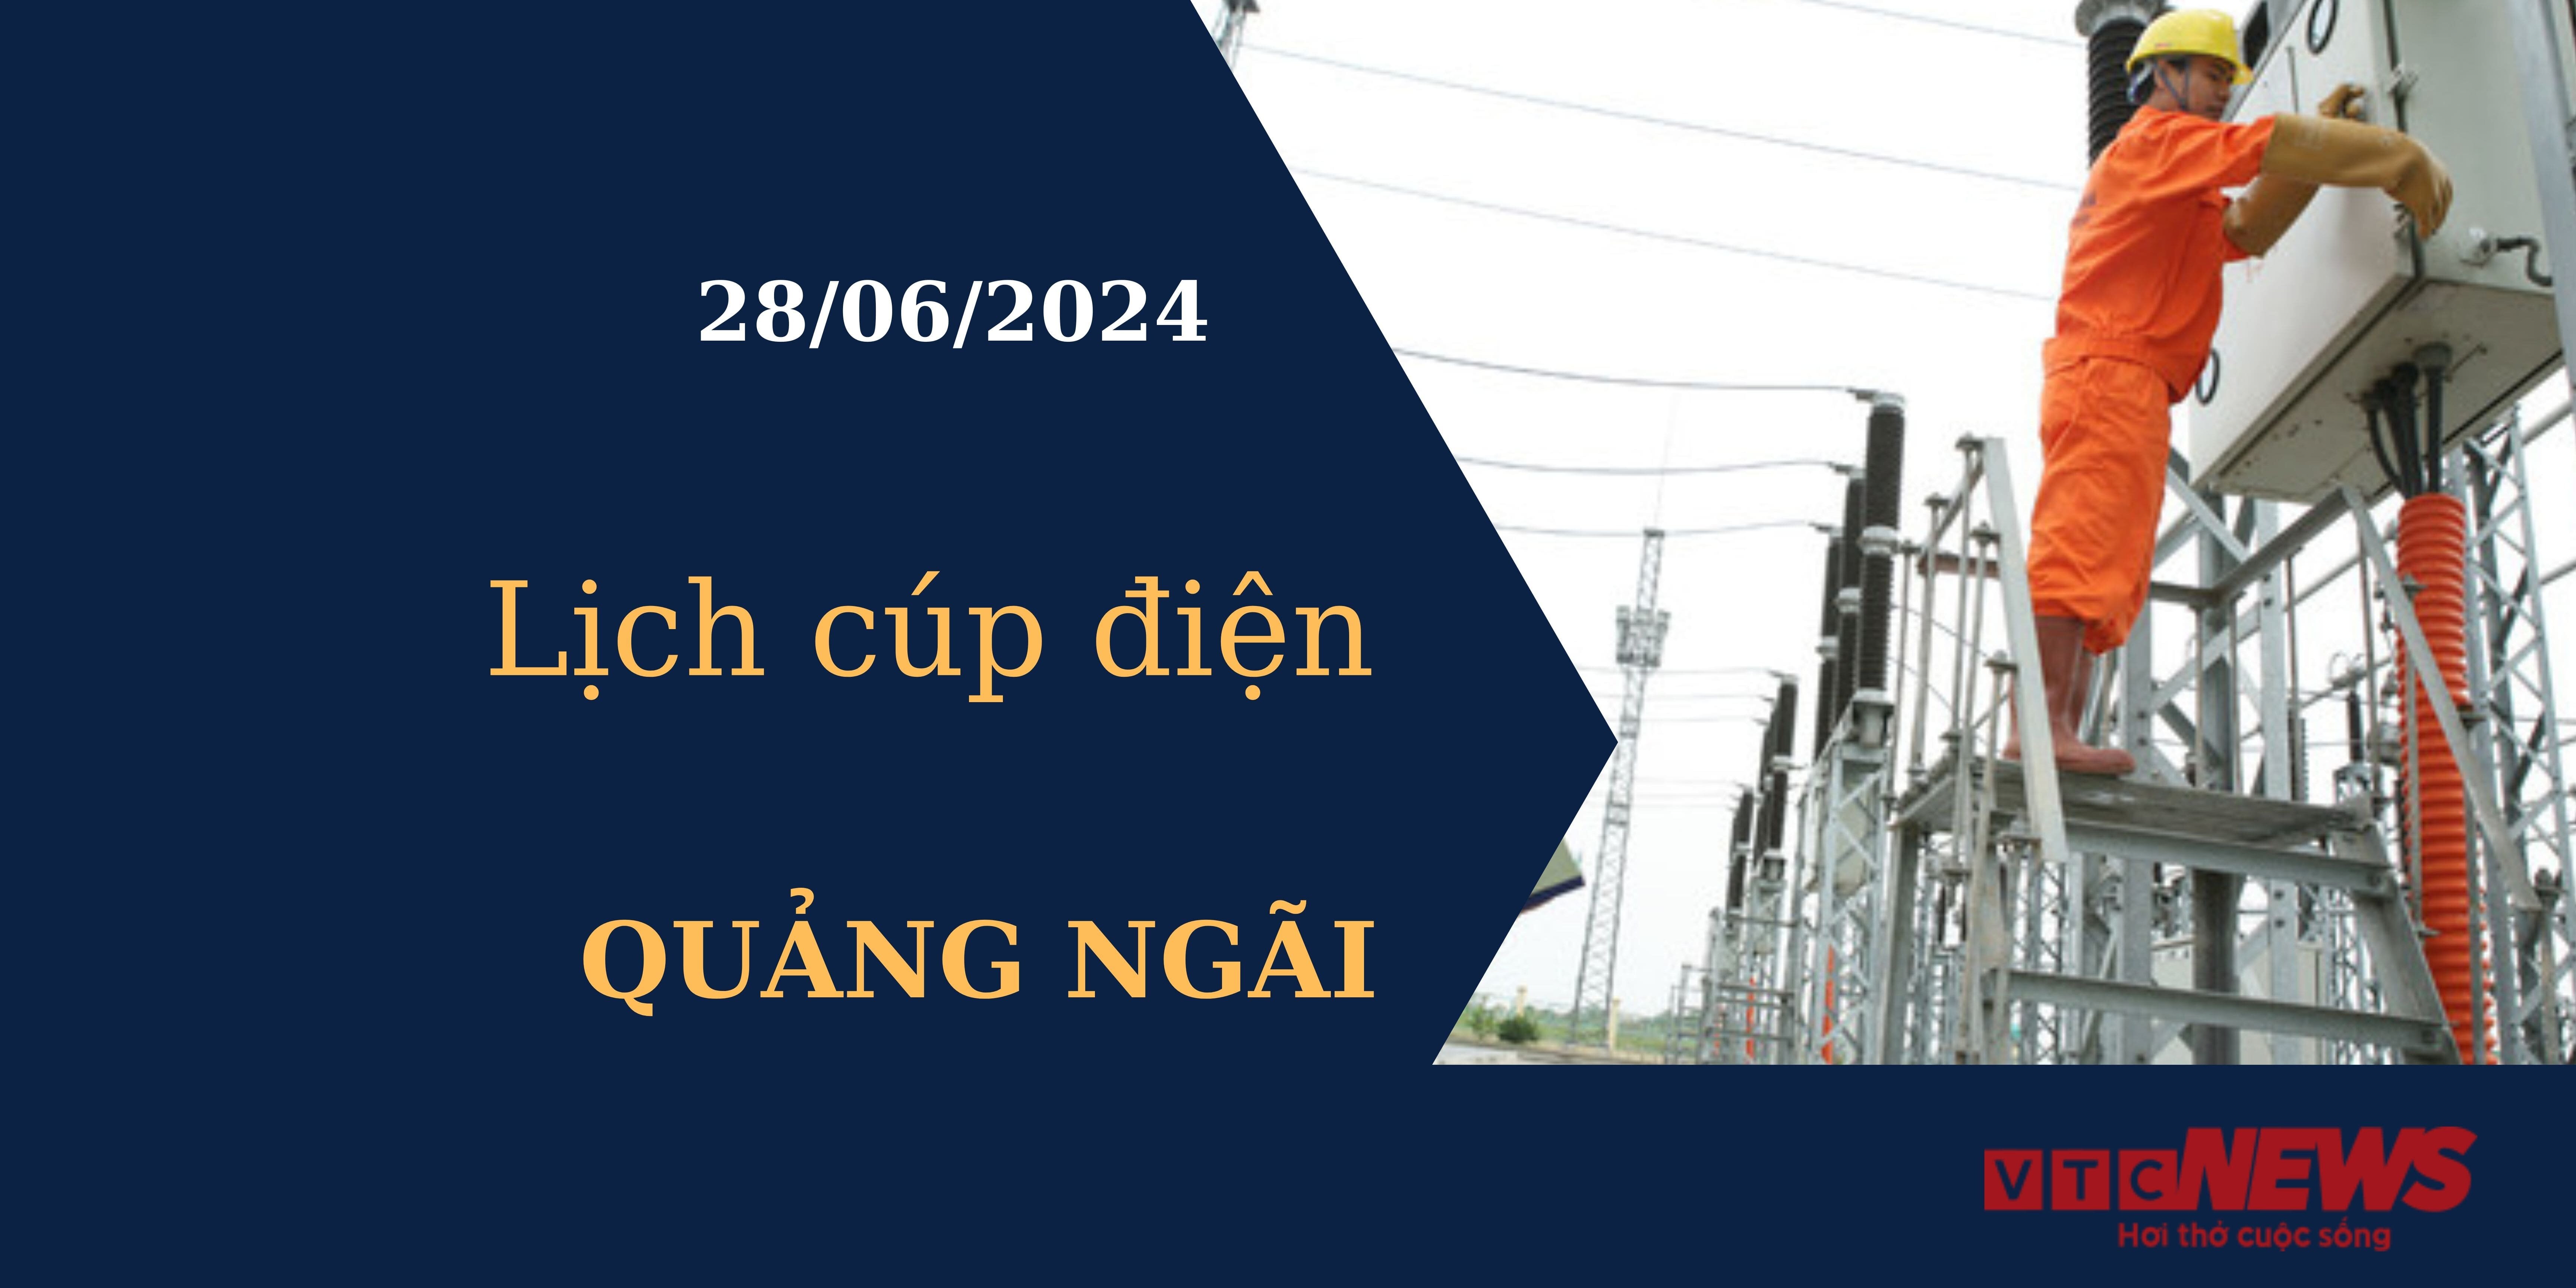 Lịch cúp điện hôm nay tại Quảng Ngãi ngày 28/06/2024